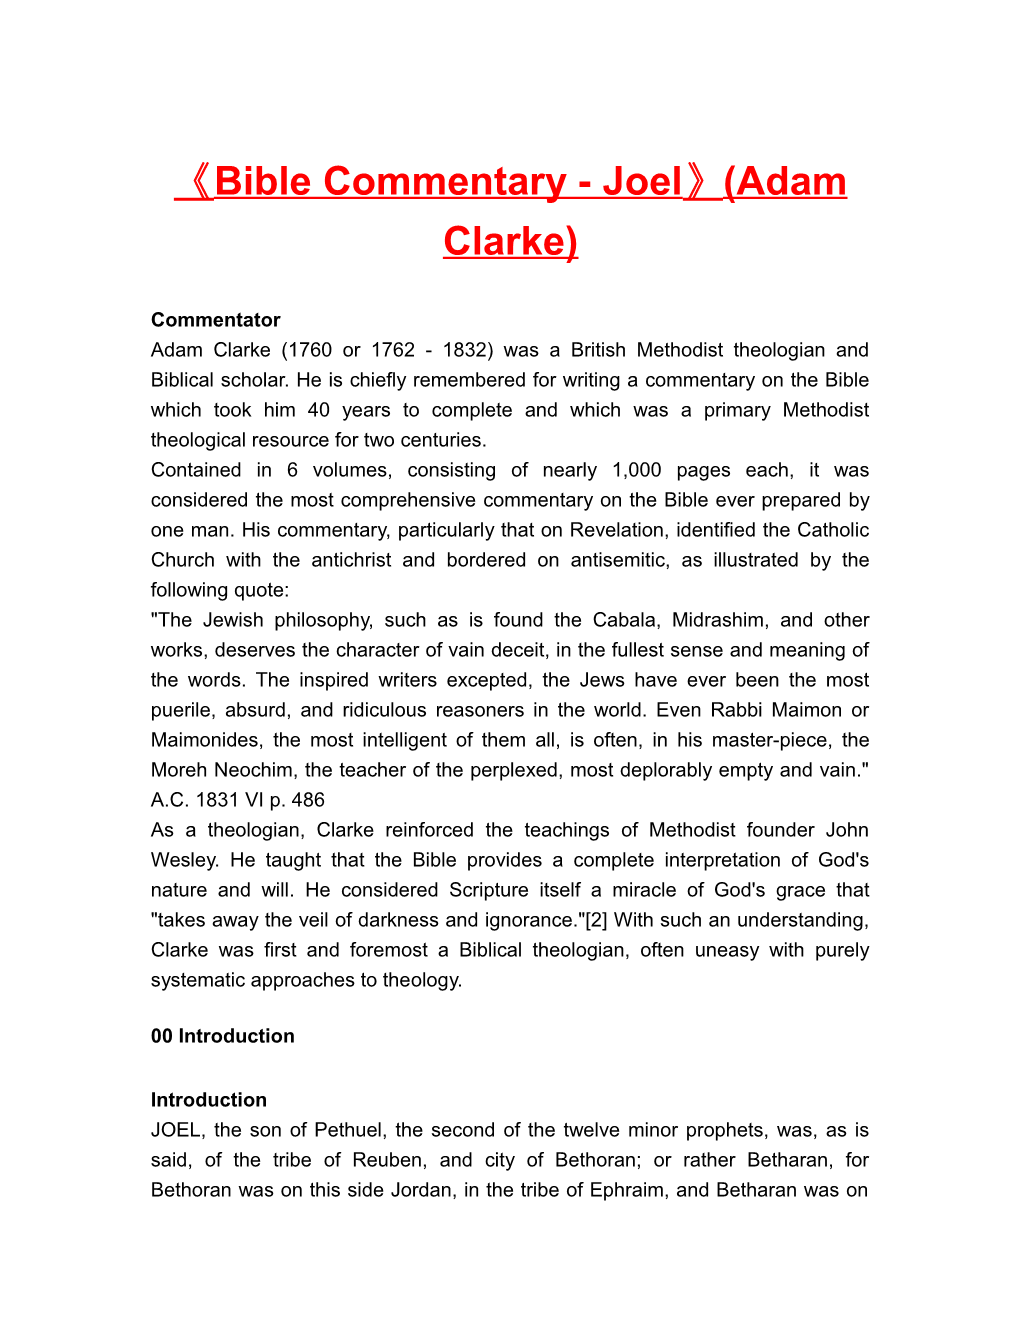 Bible Commentary - Joel (Adam Clarke)